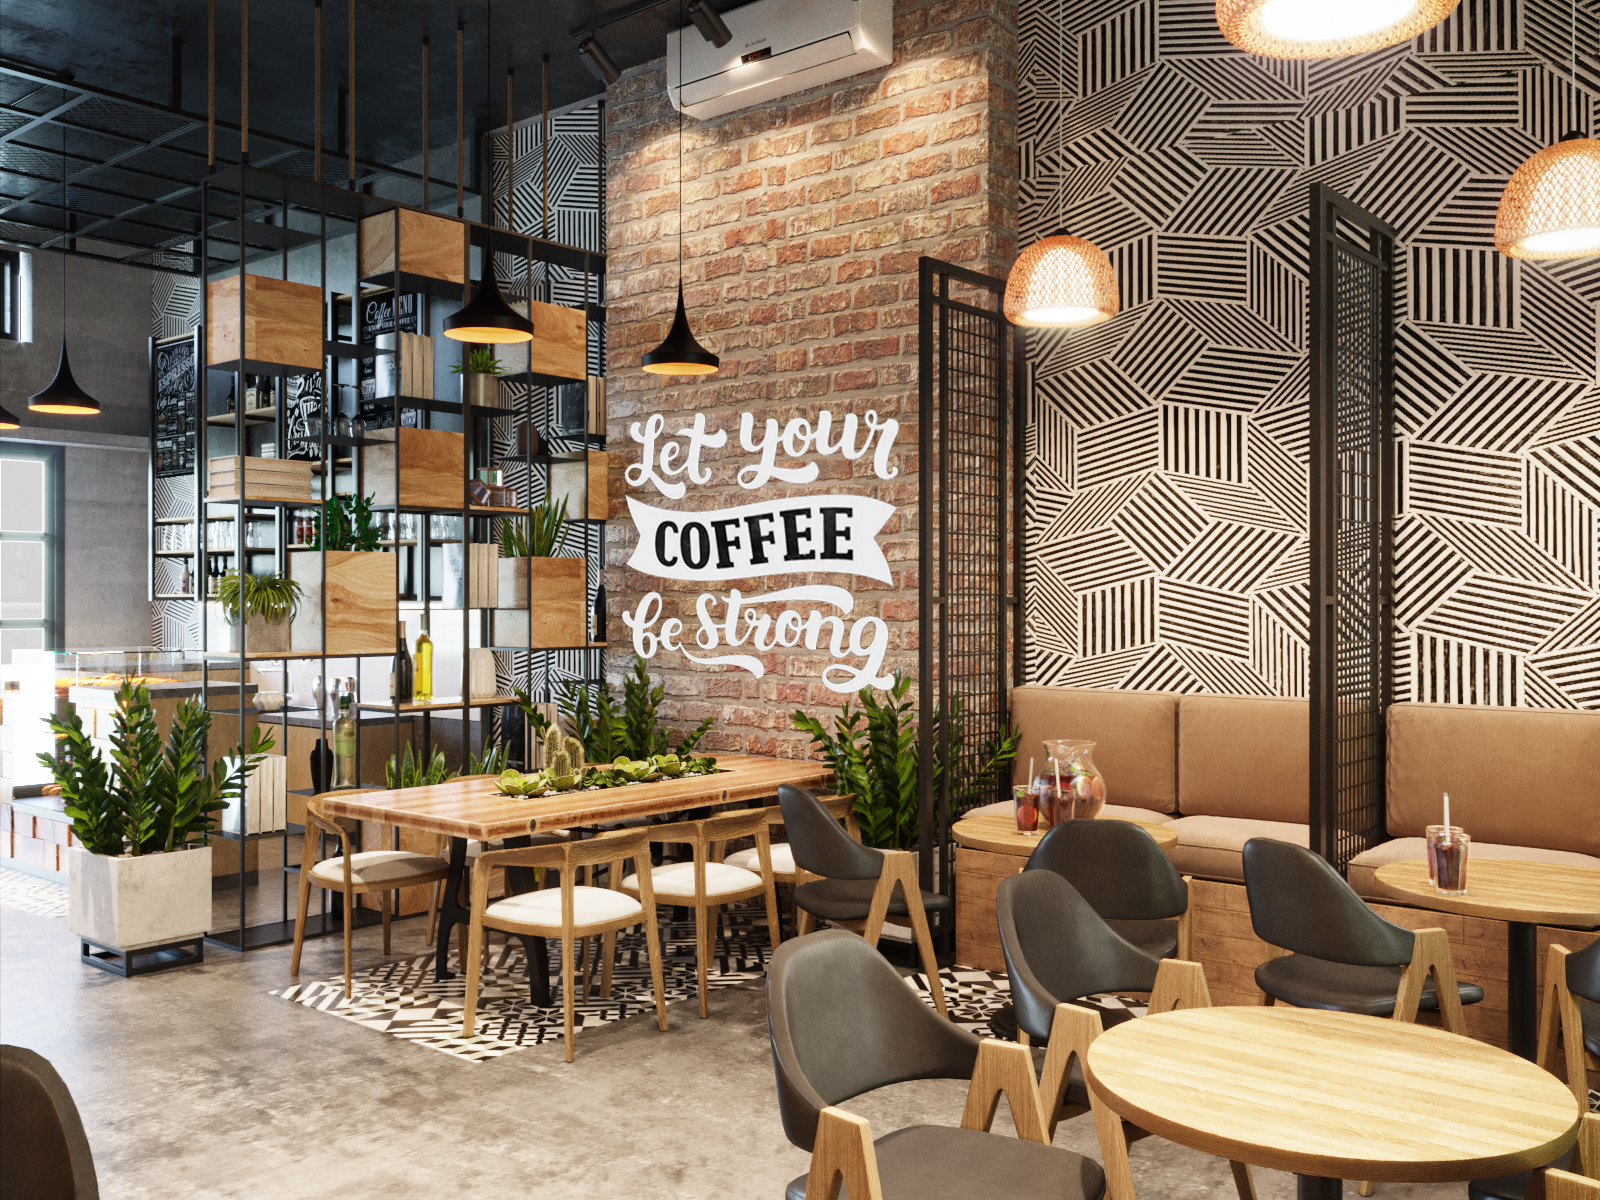 Thiết kế nội thất Cafe tại Long An Rum coffee - Bến Lức 1610860965 5